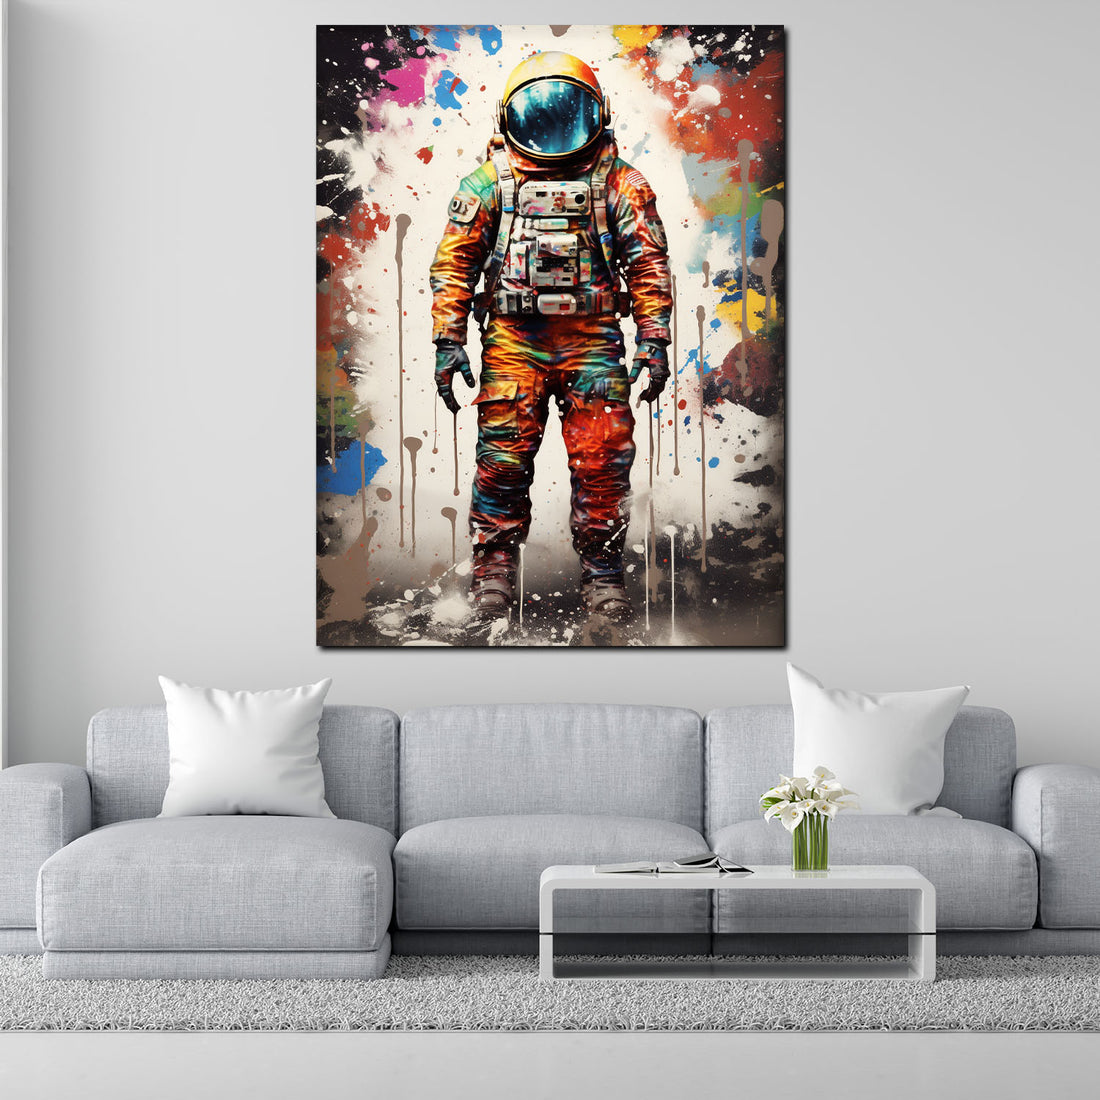 Wandbild Pop Art Astronaut Abstract Style